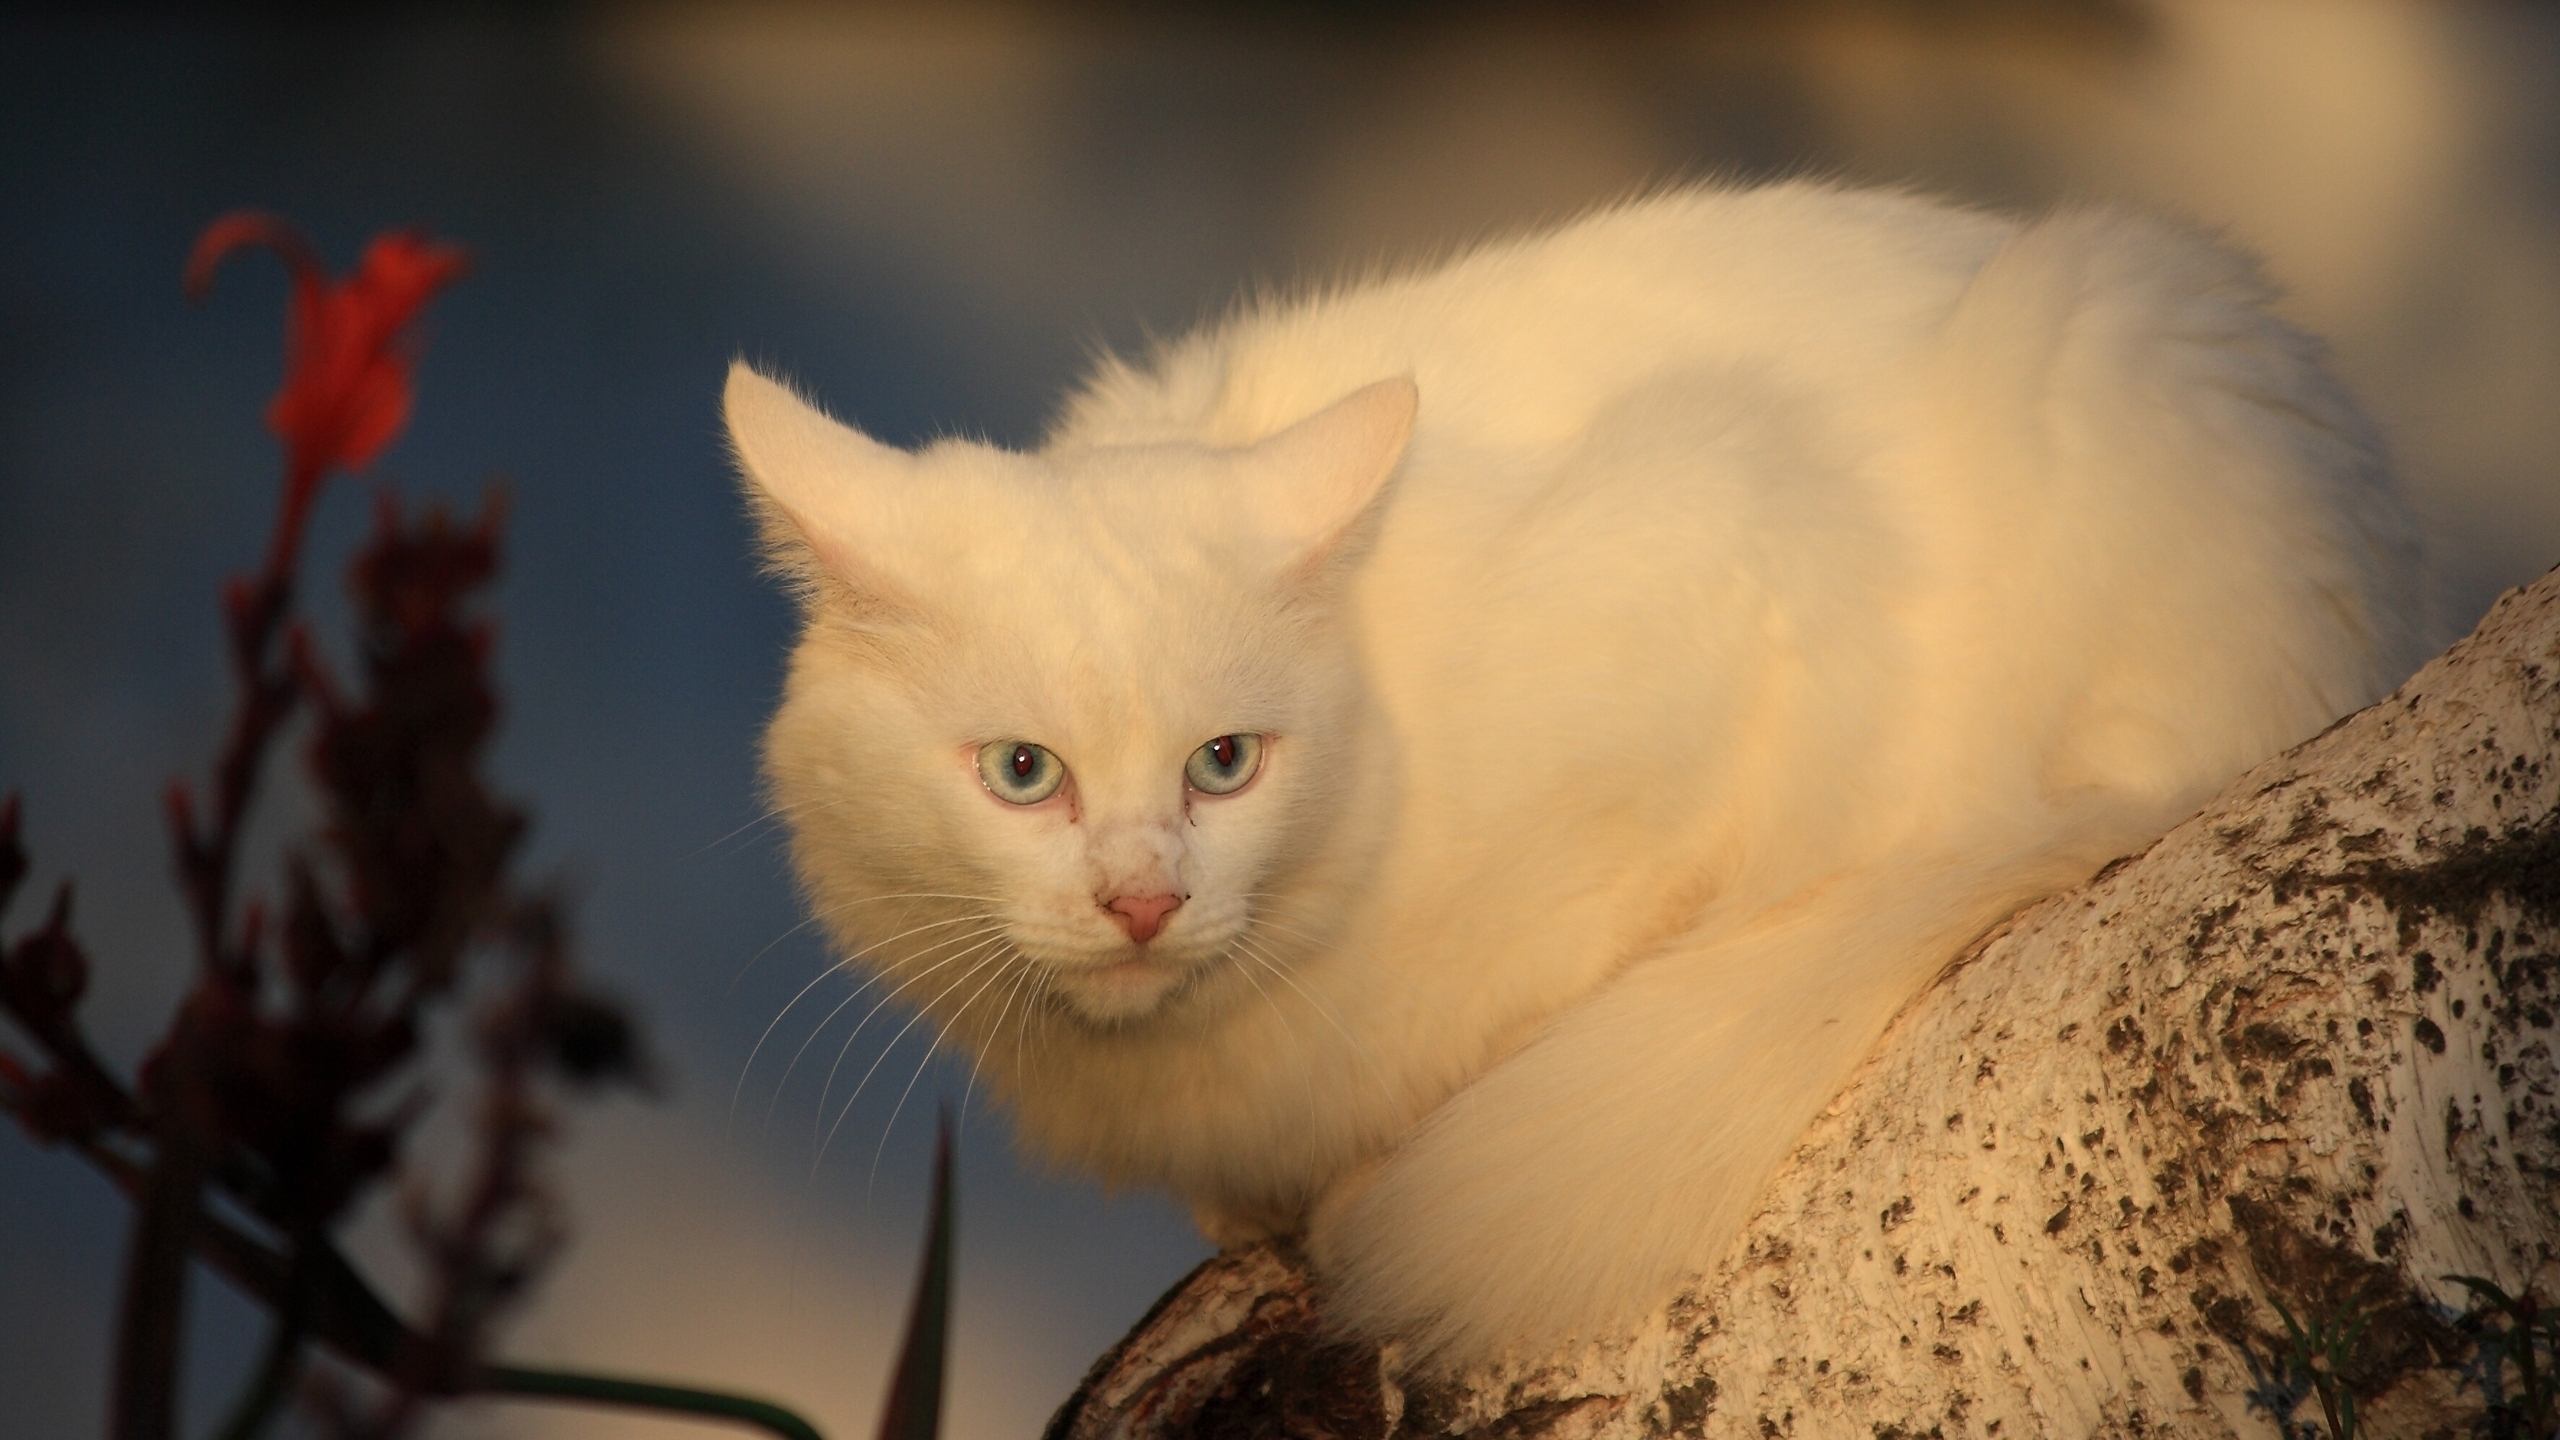 White Cat for 2560x1440 HDTV resolution